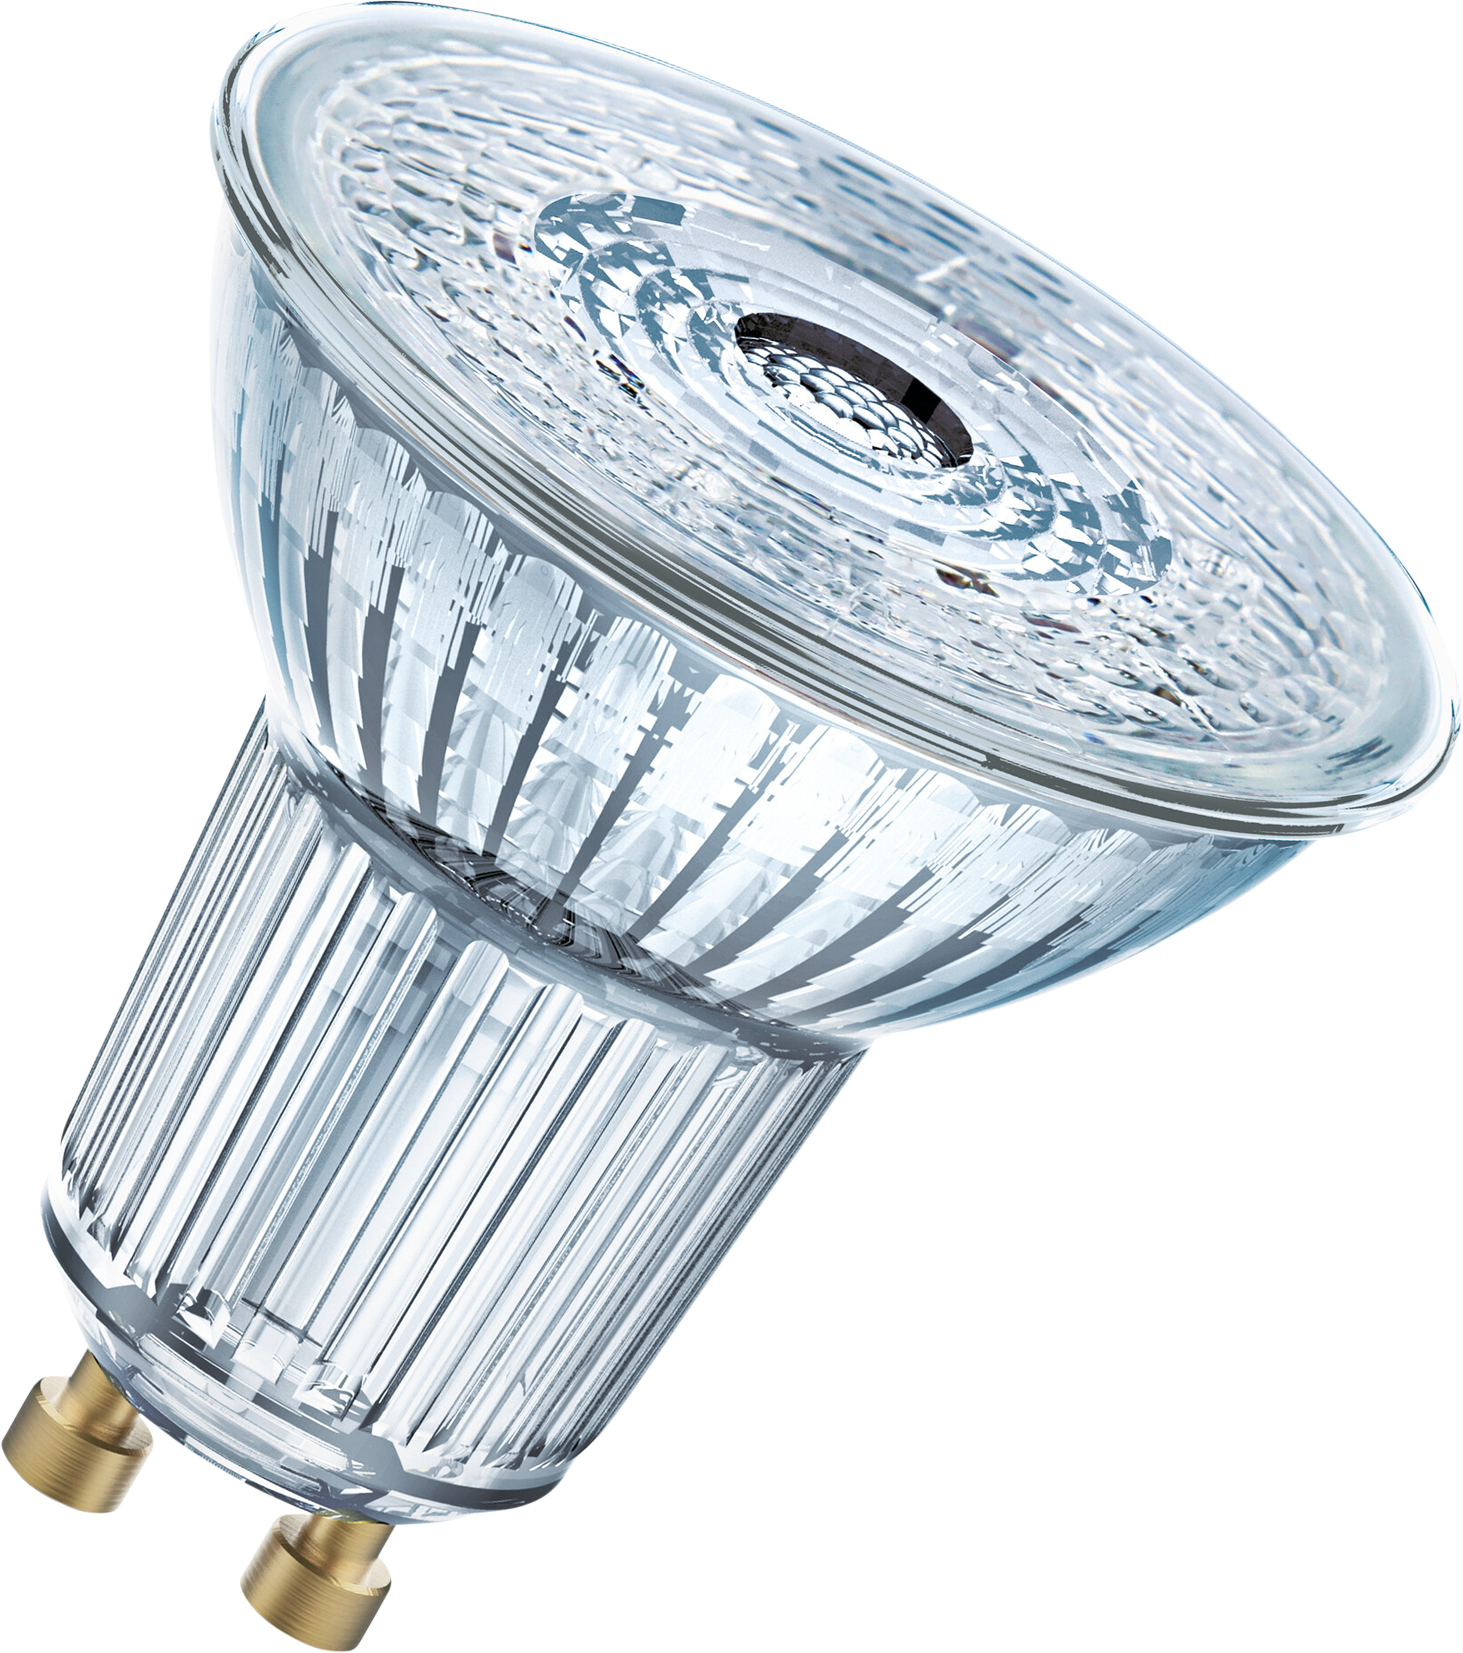 OSRAM LED-Lampe Superstar PAR16 GU10, 8.3W, 575lm, warmweiss - Lampen, Leuchten